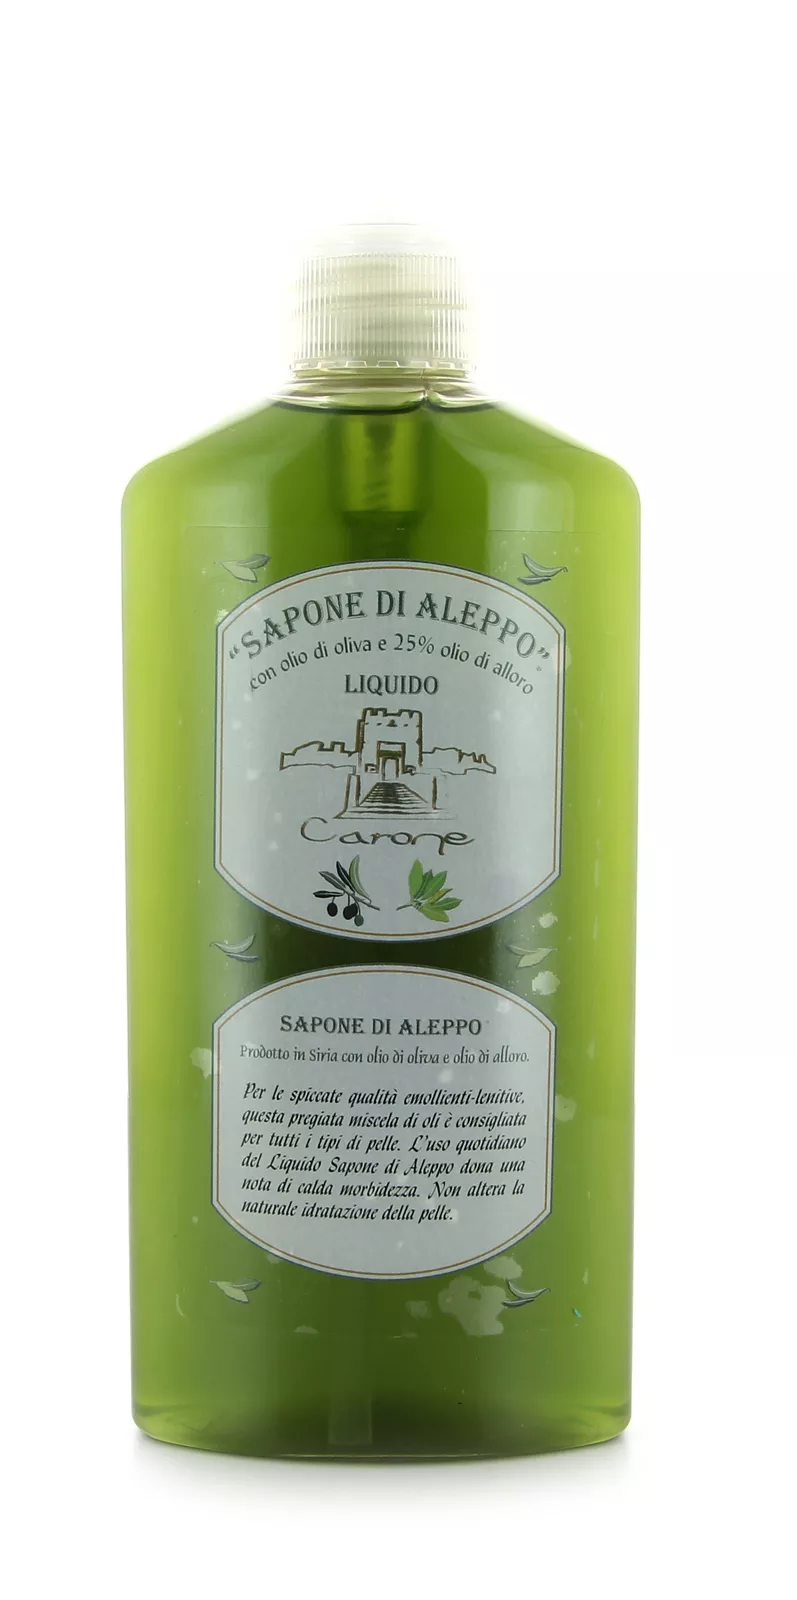 SAPONETTE VEGETALI all’olio di cocco profumate - 100 g | Carone Cosmetics •  Sapone di Aleppo • Prodotti Cosmetici Naturali